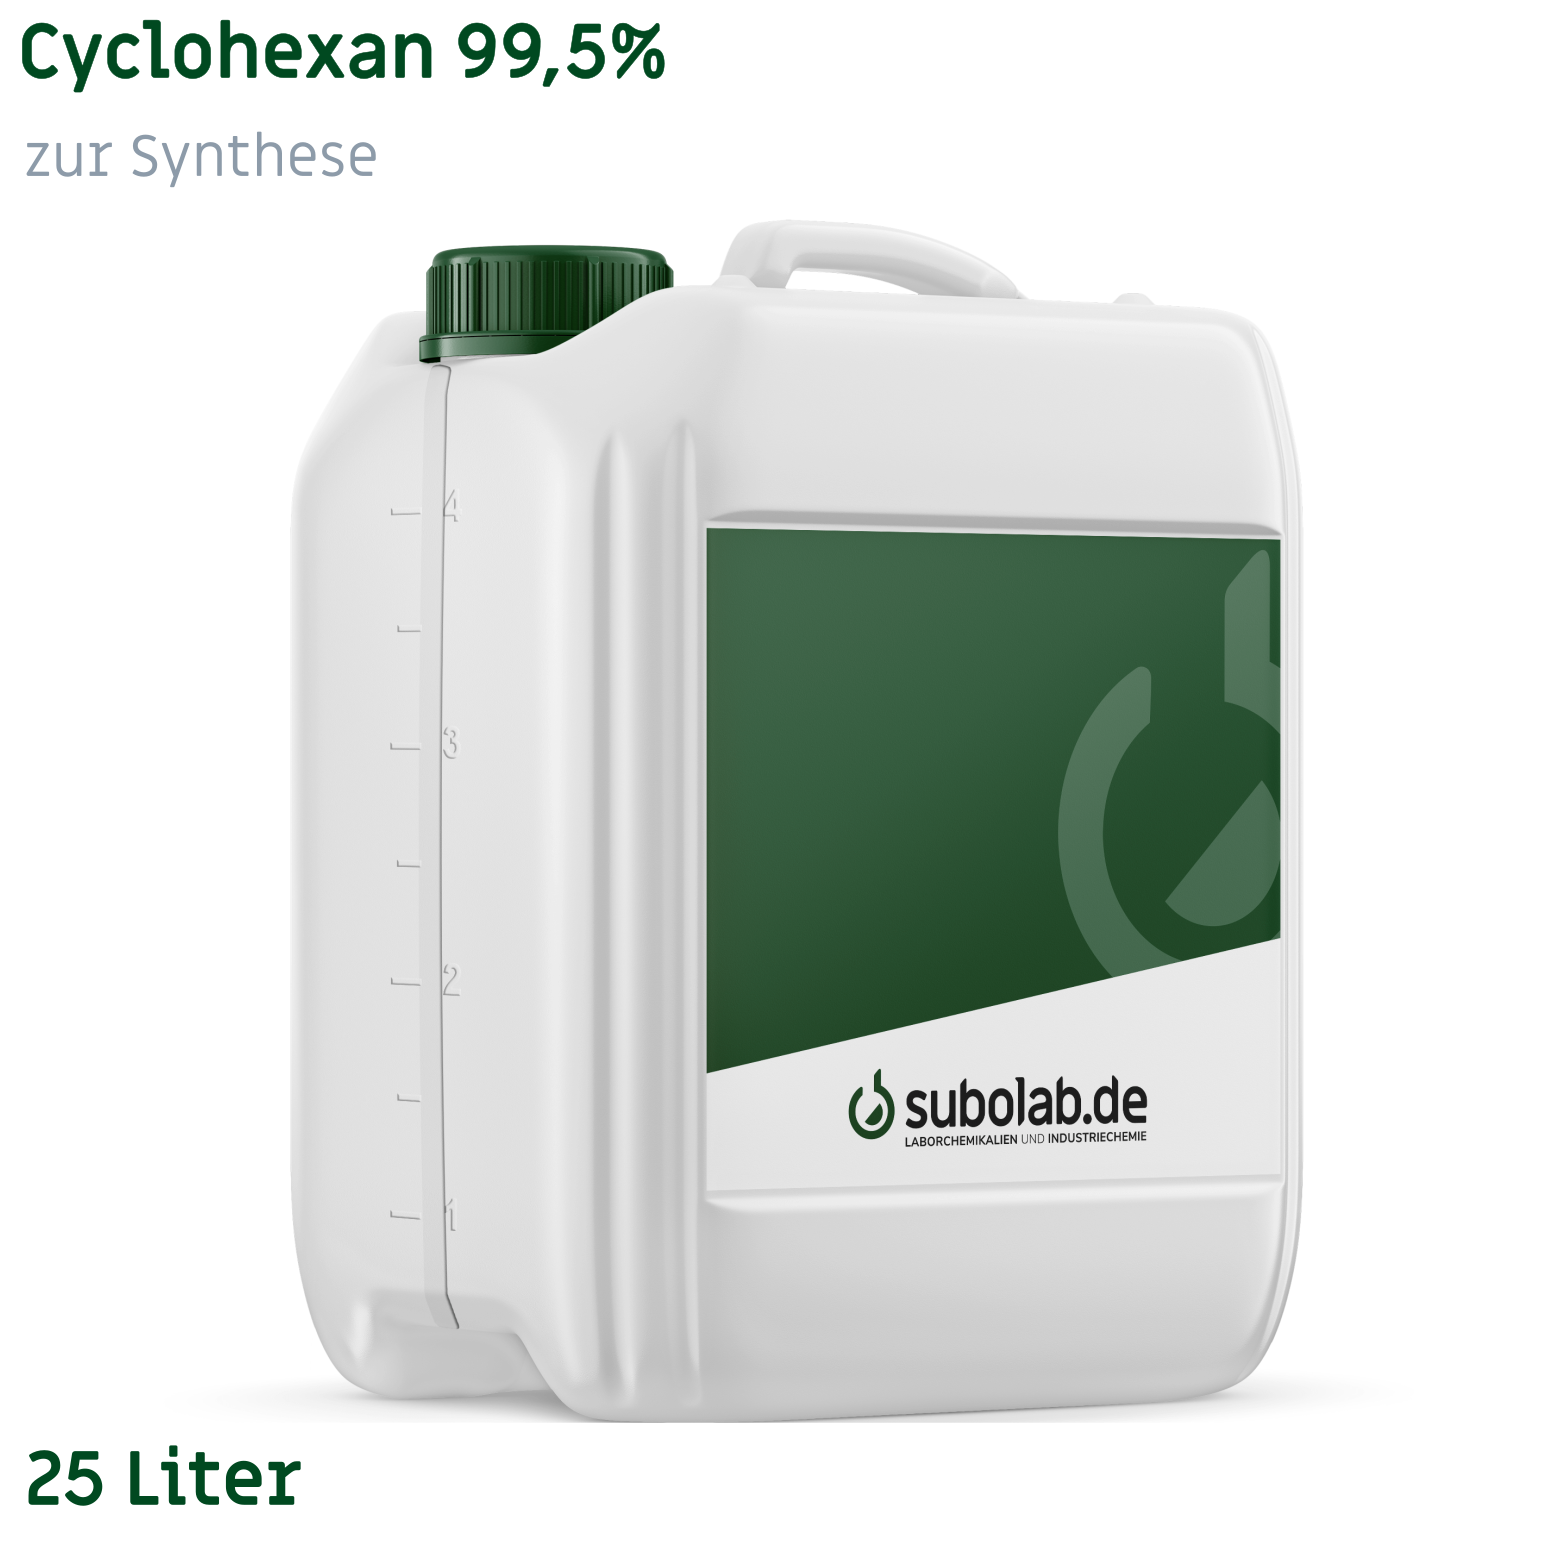 Bild von Cyclohexan 99,5% zur Synthese (25 Liter)